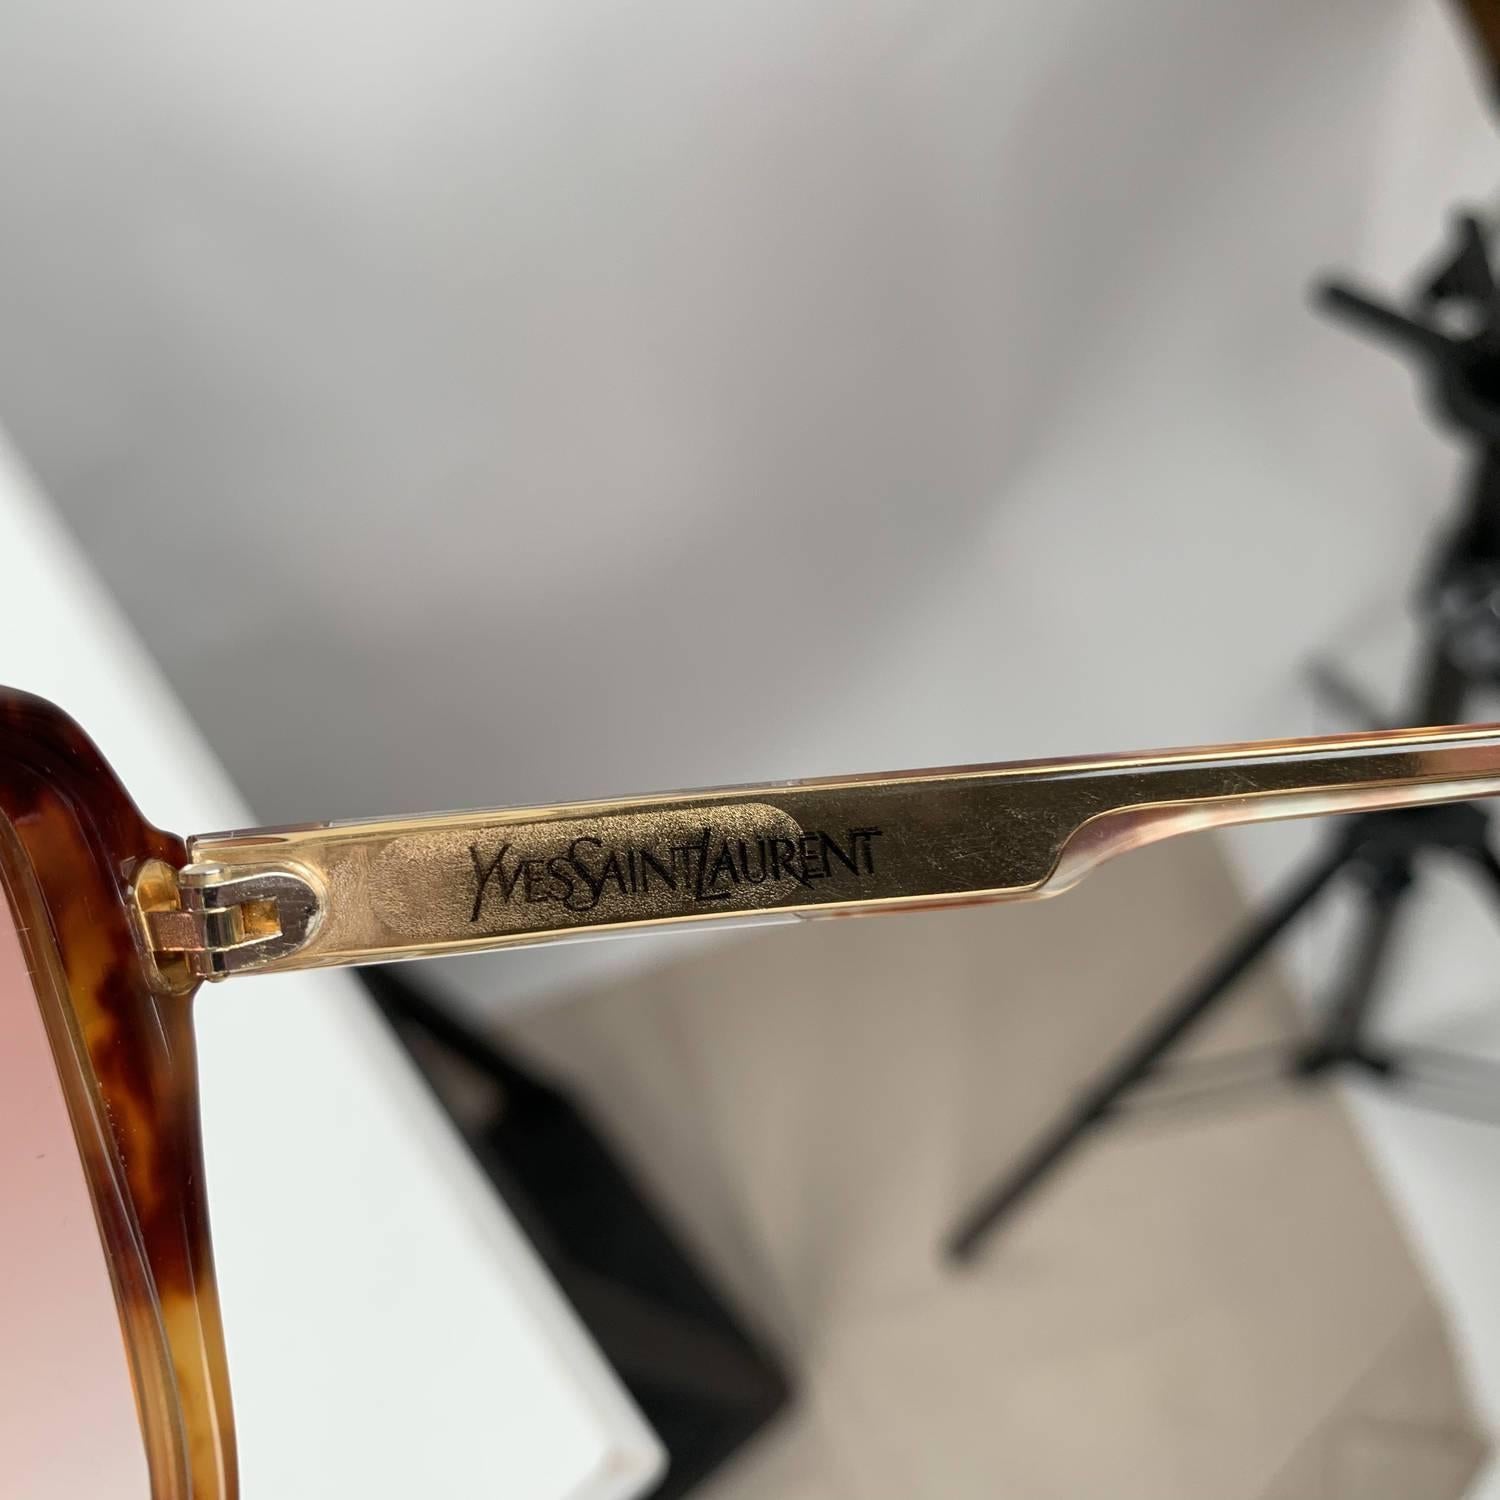 Yves Saint Laurent Vintage Butterfly Mint Sunglasses 8150 58-14 140mm 2